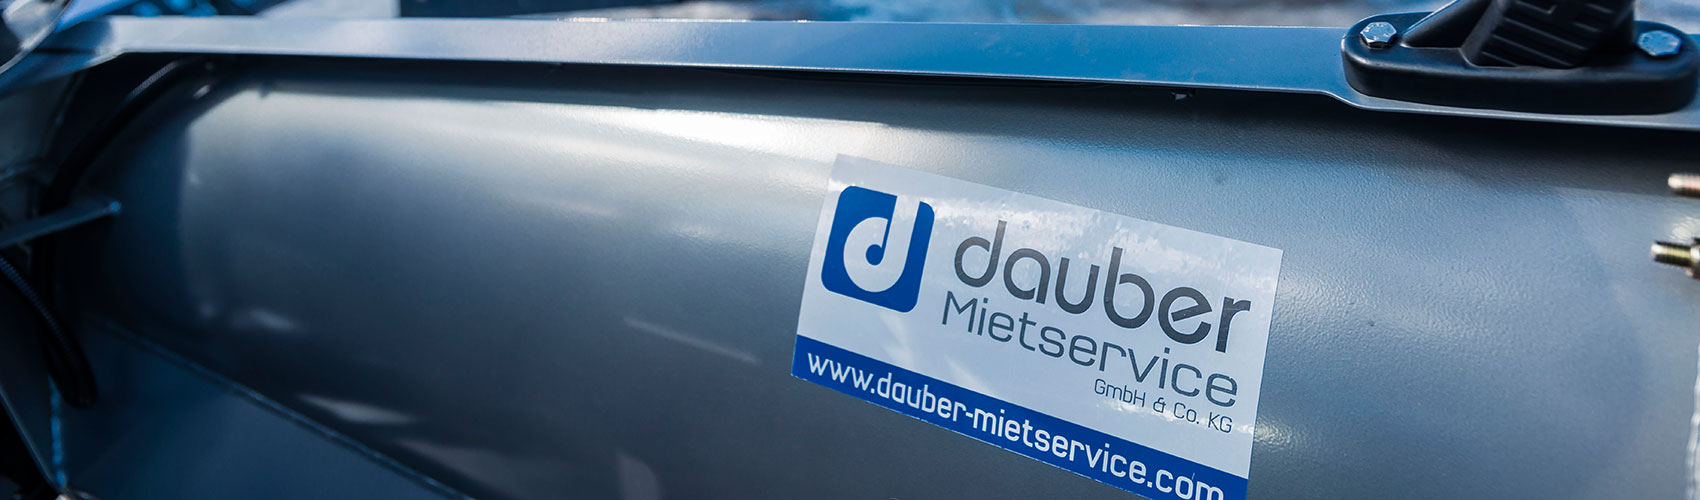 Dauber Mietservice - Ihr Winterdienst-Partner im Rhein-Main-Gebiet